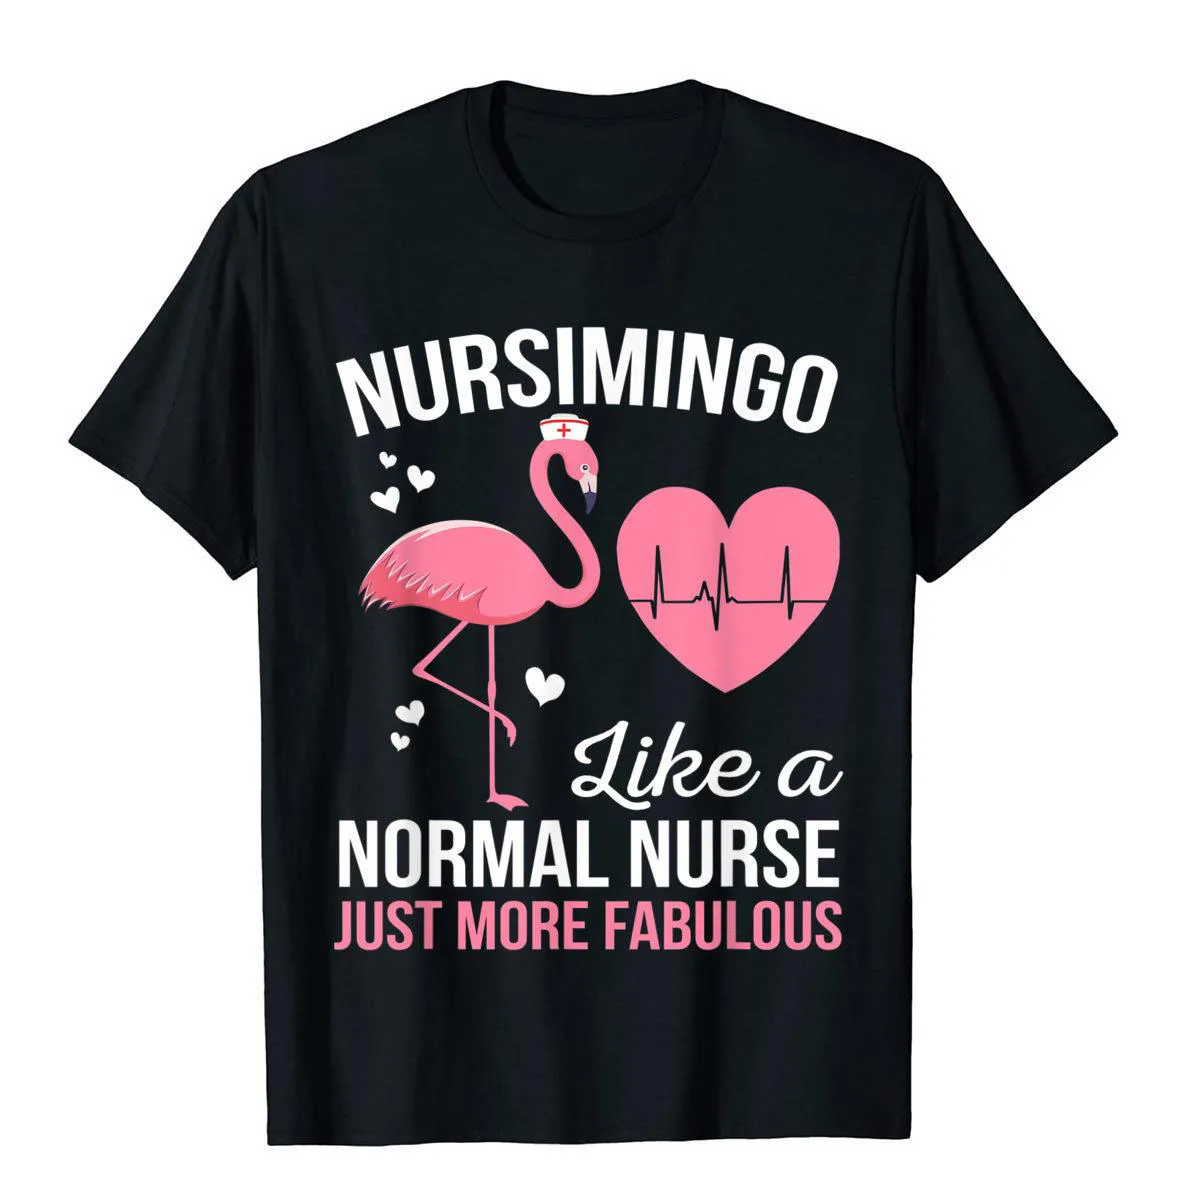 

Забавная футболка Nursimingo с розовым фламинго для медсестры, купоны, Мужская футболка, хлопковые топы, футболки, женские футболки, уличная одеж...